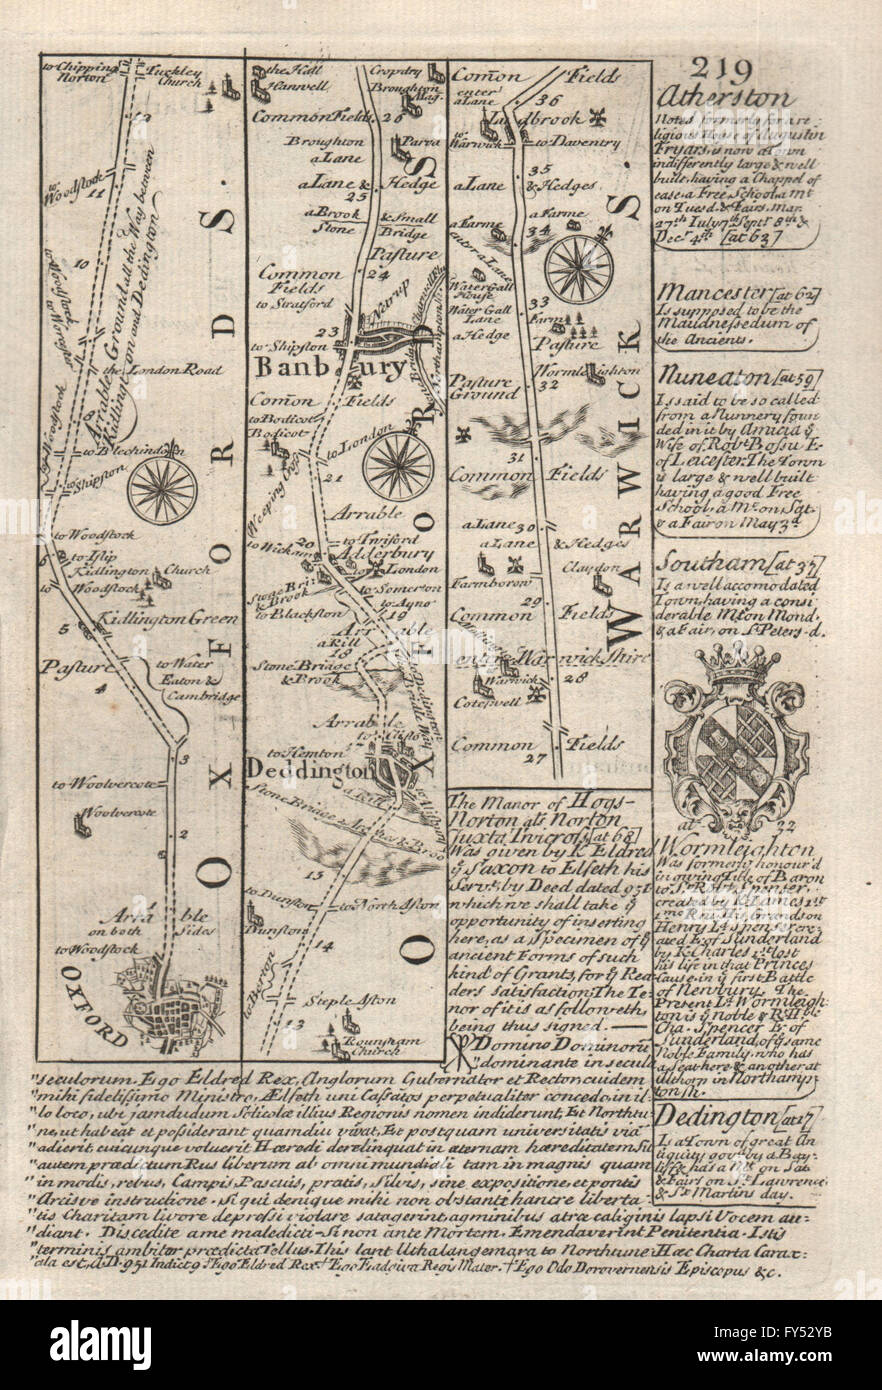 Oxford-Deddington-Banbury road strip map by J. OWEN & E. BOWEN, 1753 Stock Photo